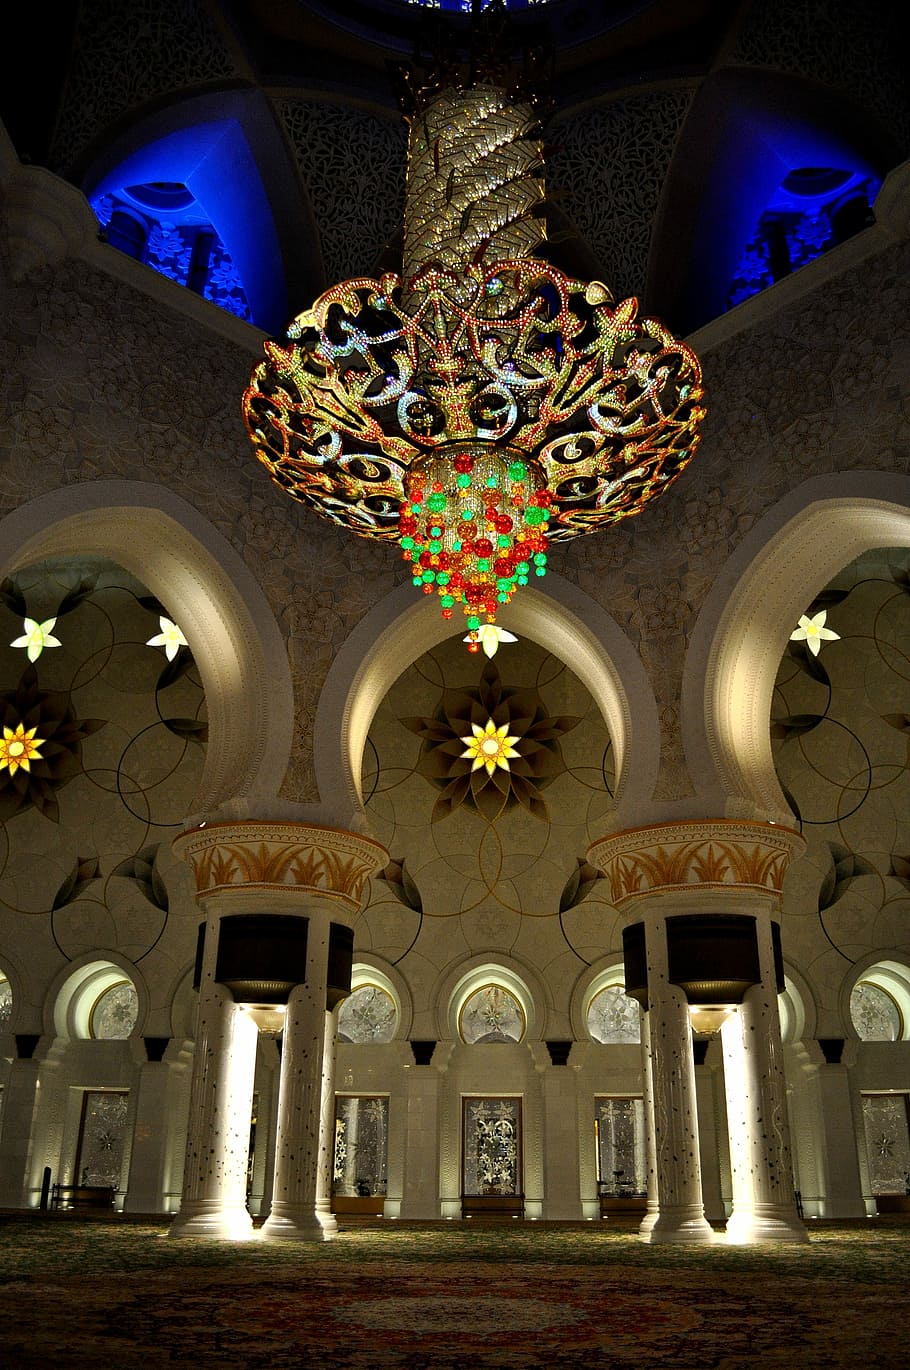 Gran mezquita, Abu Dhabi, Emiratos Árabes Unidos, Islam, emiratos, mezquita, interior, islámica, arquitectura, ornamentada